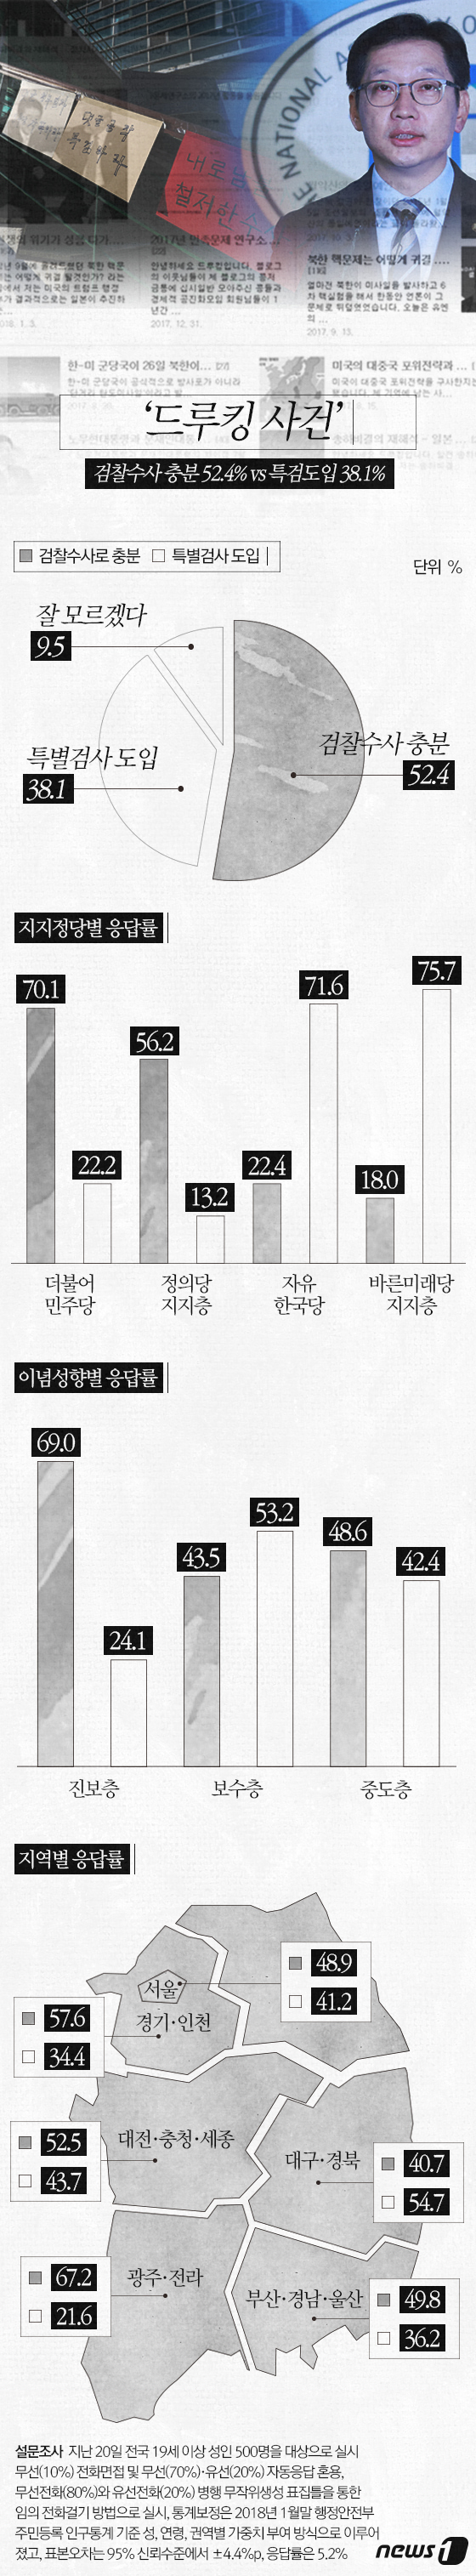 [그래픽뉴스] \'드루킹 사건\' 검찰수사 충분 52.4% vs 특검도입 38.1%